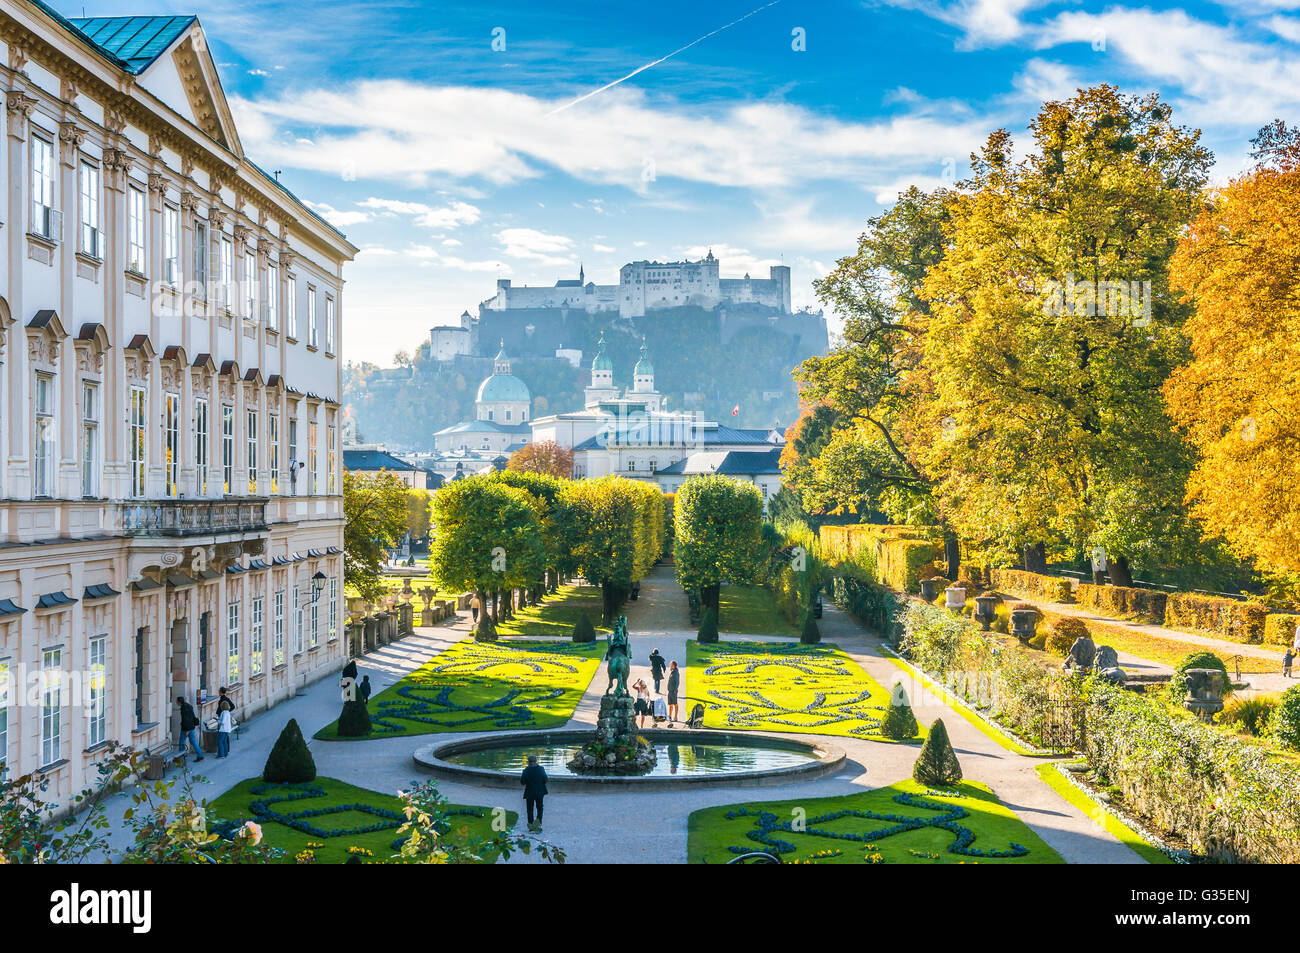 Schöne Aussicht auf den berühmten Mirabellgarten mit den alten historischen Festung Hohensalzburg im Hintergrund in Salzburg, Österreich Stockfoto